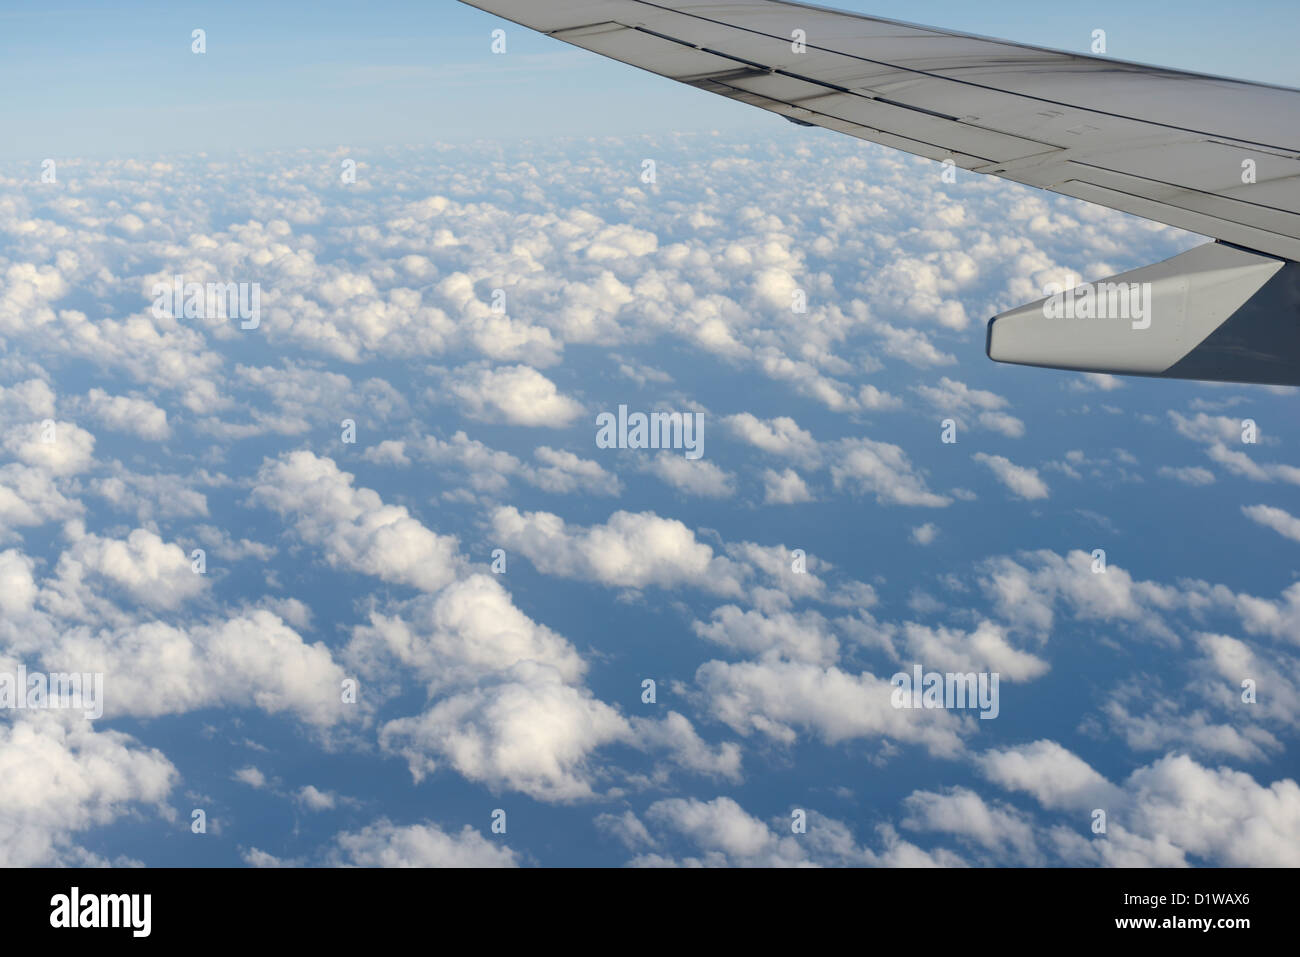 Aereo commerciale ala sopra le nuvole, vista da finestra Foto Stock